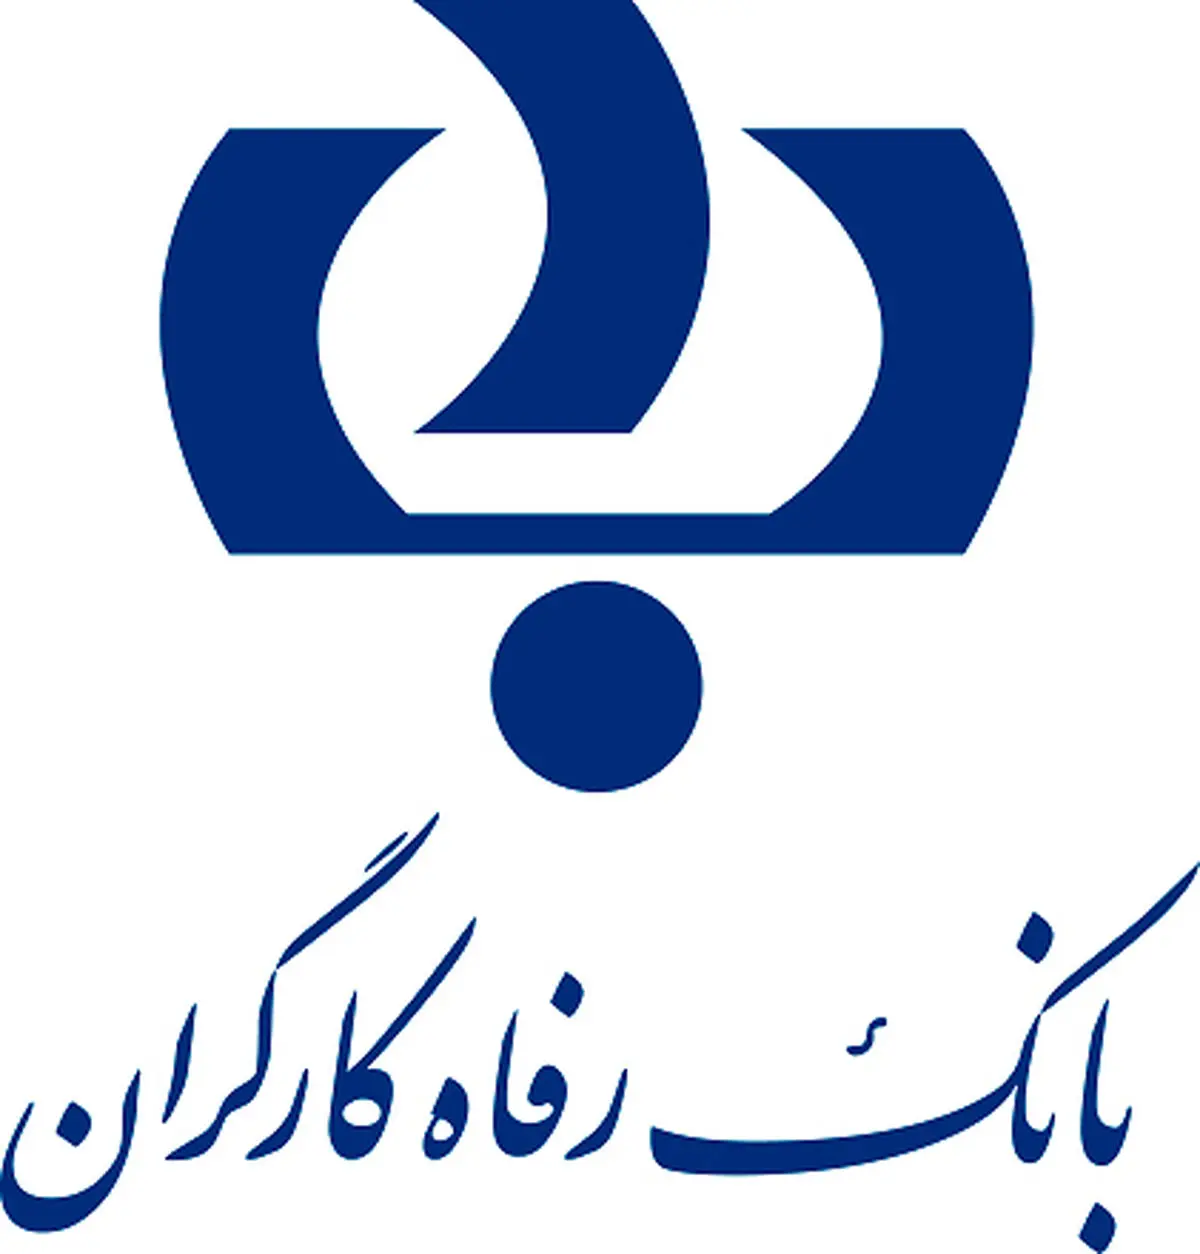 مشارکت بانک رفاه کارگران در تجهیز دانشگاه علوم پزشکی خراسان شمالی

